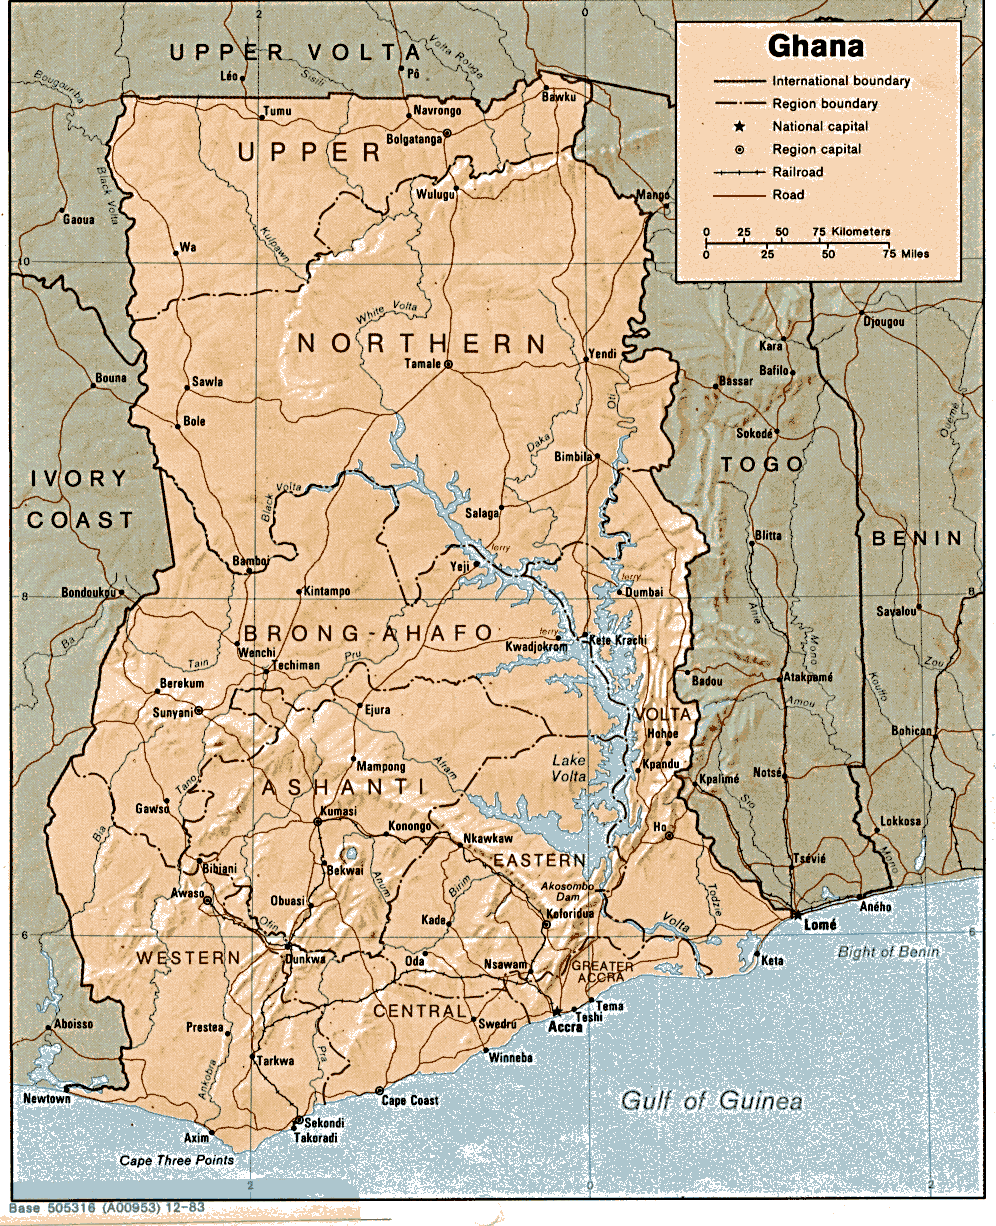 Ghana Map Vector